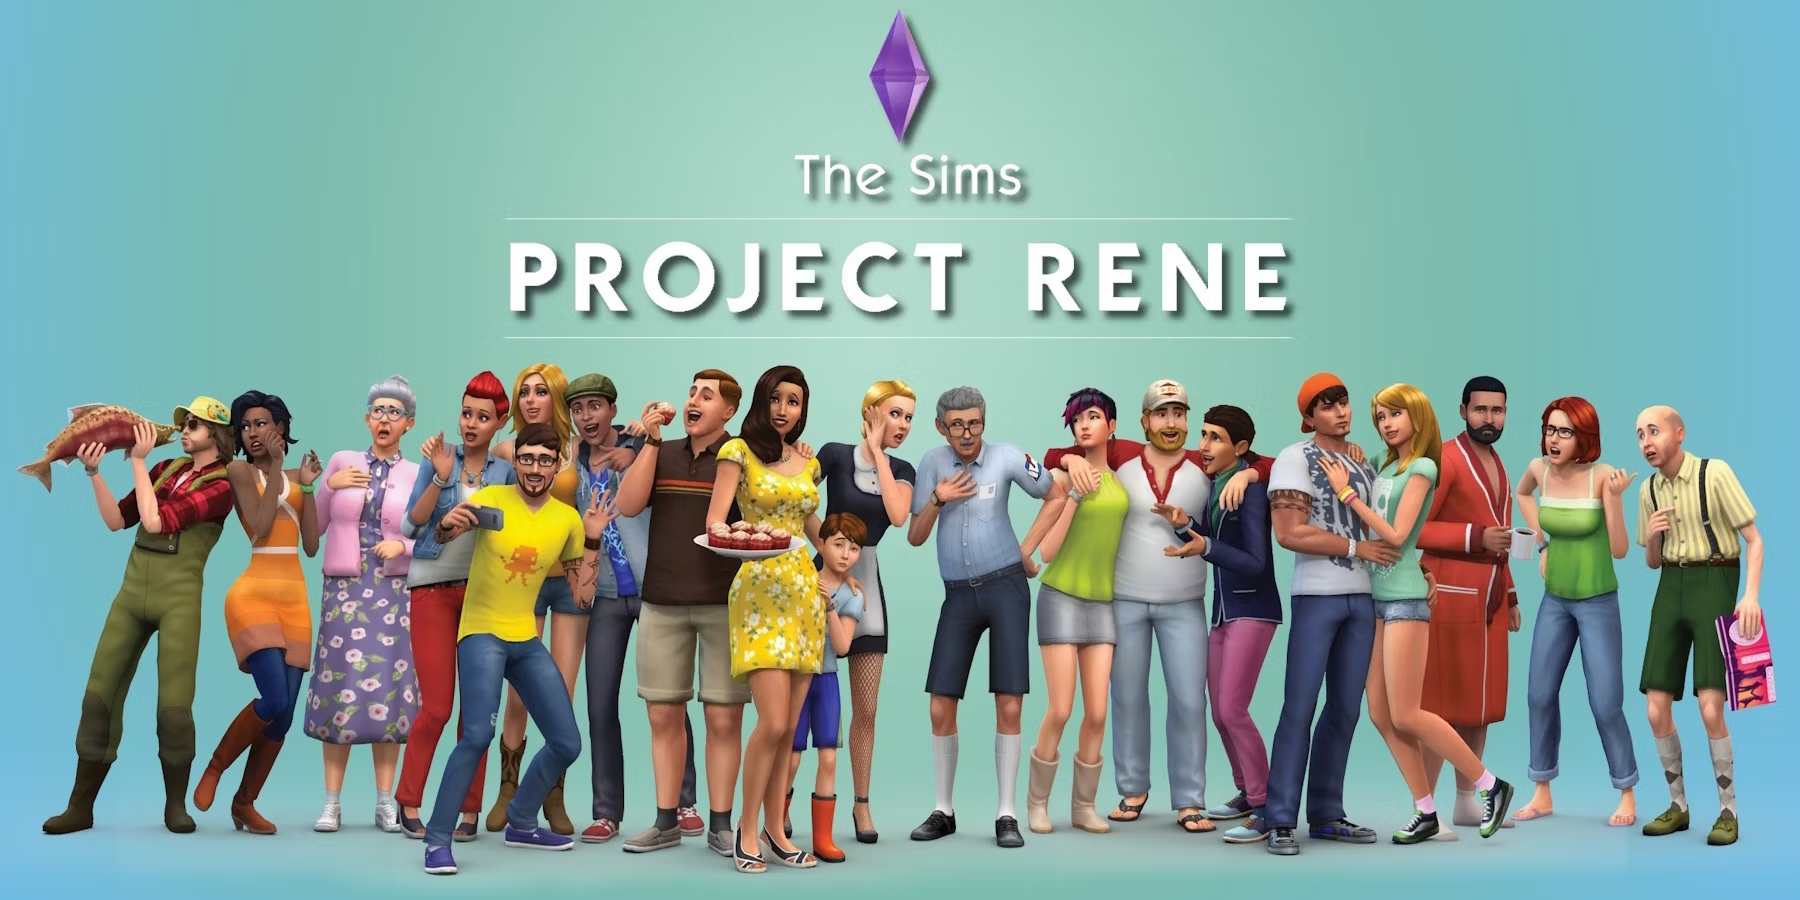 The Sims 5 Cần Ngay Một Hệ Thống Tạo Nhân Vật Đỉnh Cao Để Giữ Ngôi Vua Thể Loại 